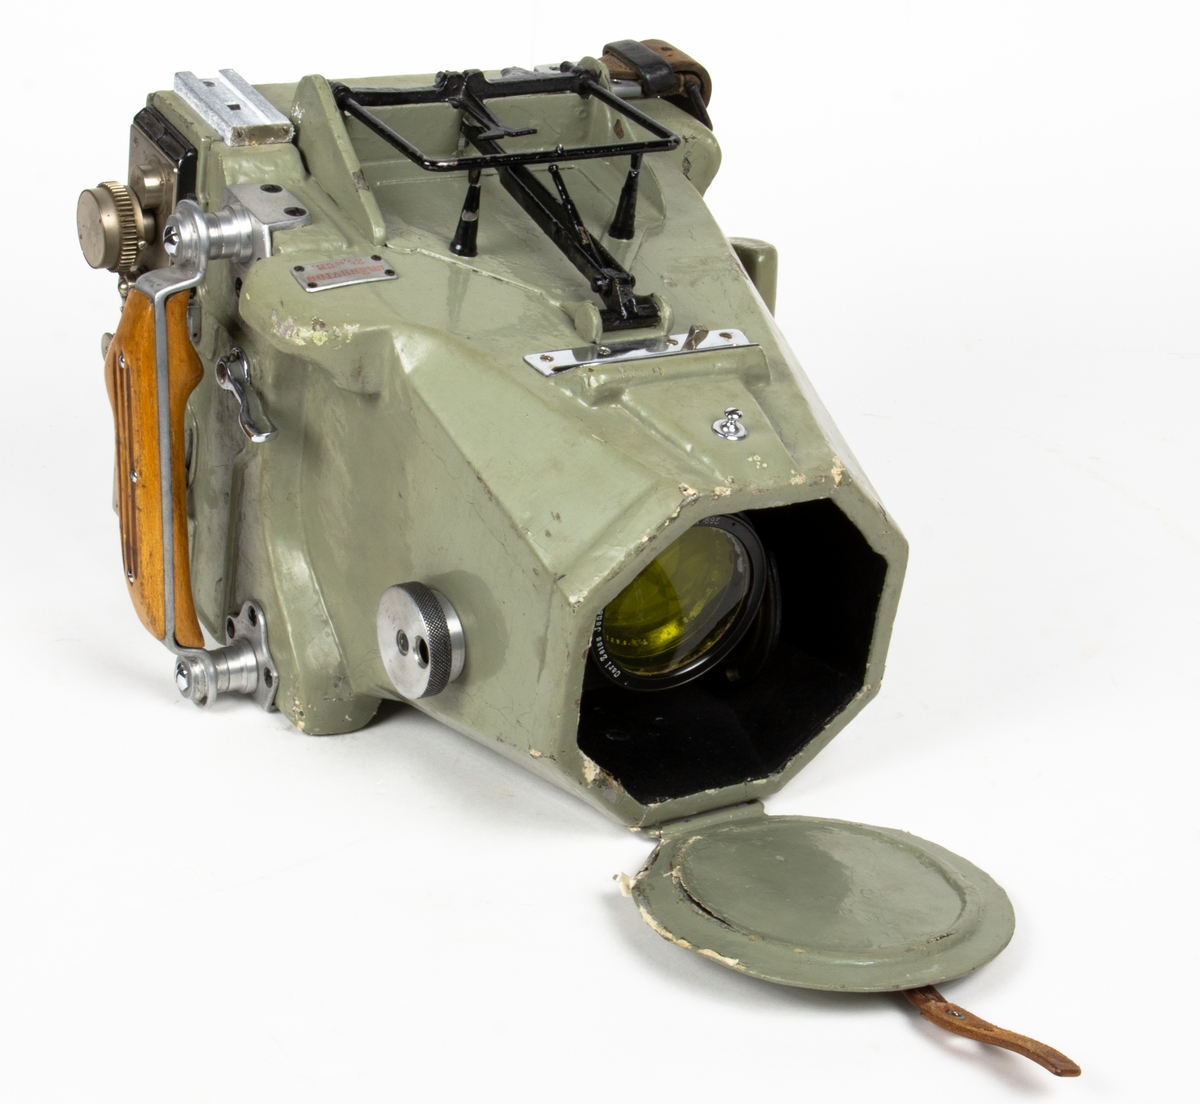 Handkamera Typ HK 1A. Lådformig kamera med läderrem på kamerans vänstra sida, samt trähandtag på dess högra sida. Utrustad med gulfilter och objektivskydd.
Präglad skylt på ovansida: BRÄNNVIDD 24,80 CM.
Tillverkningslogotyp på sidan: ZEISS-AEROTOPOGRAPH G.m.b.H. CARL ZEISS JENA